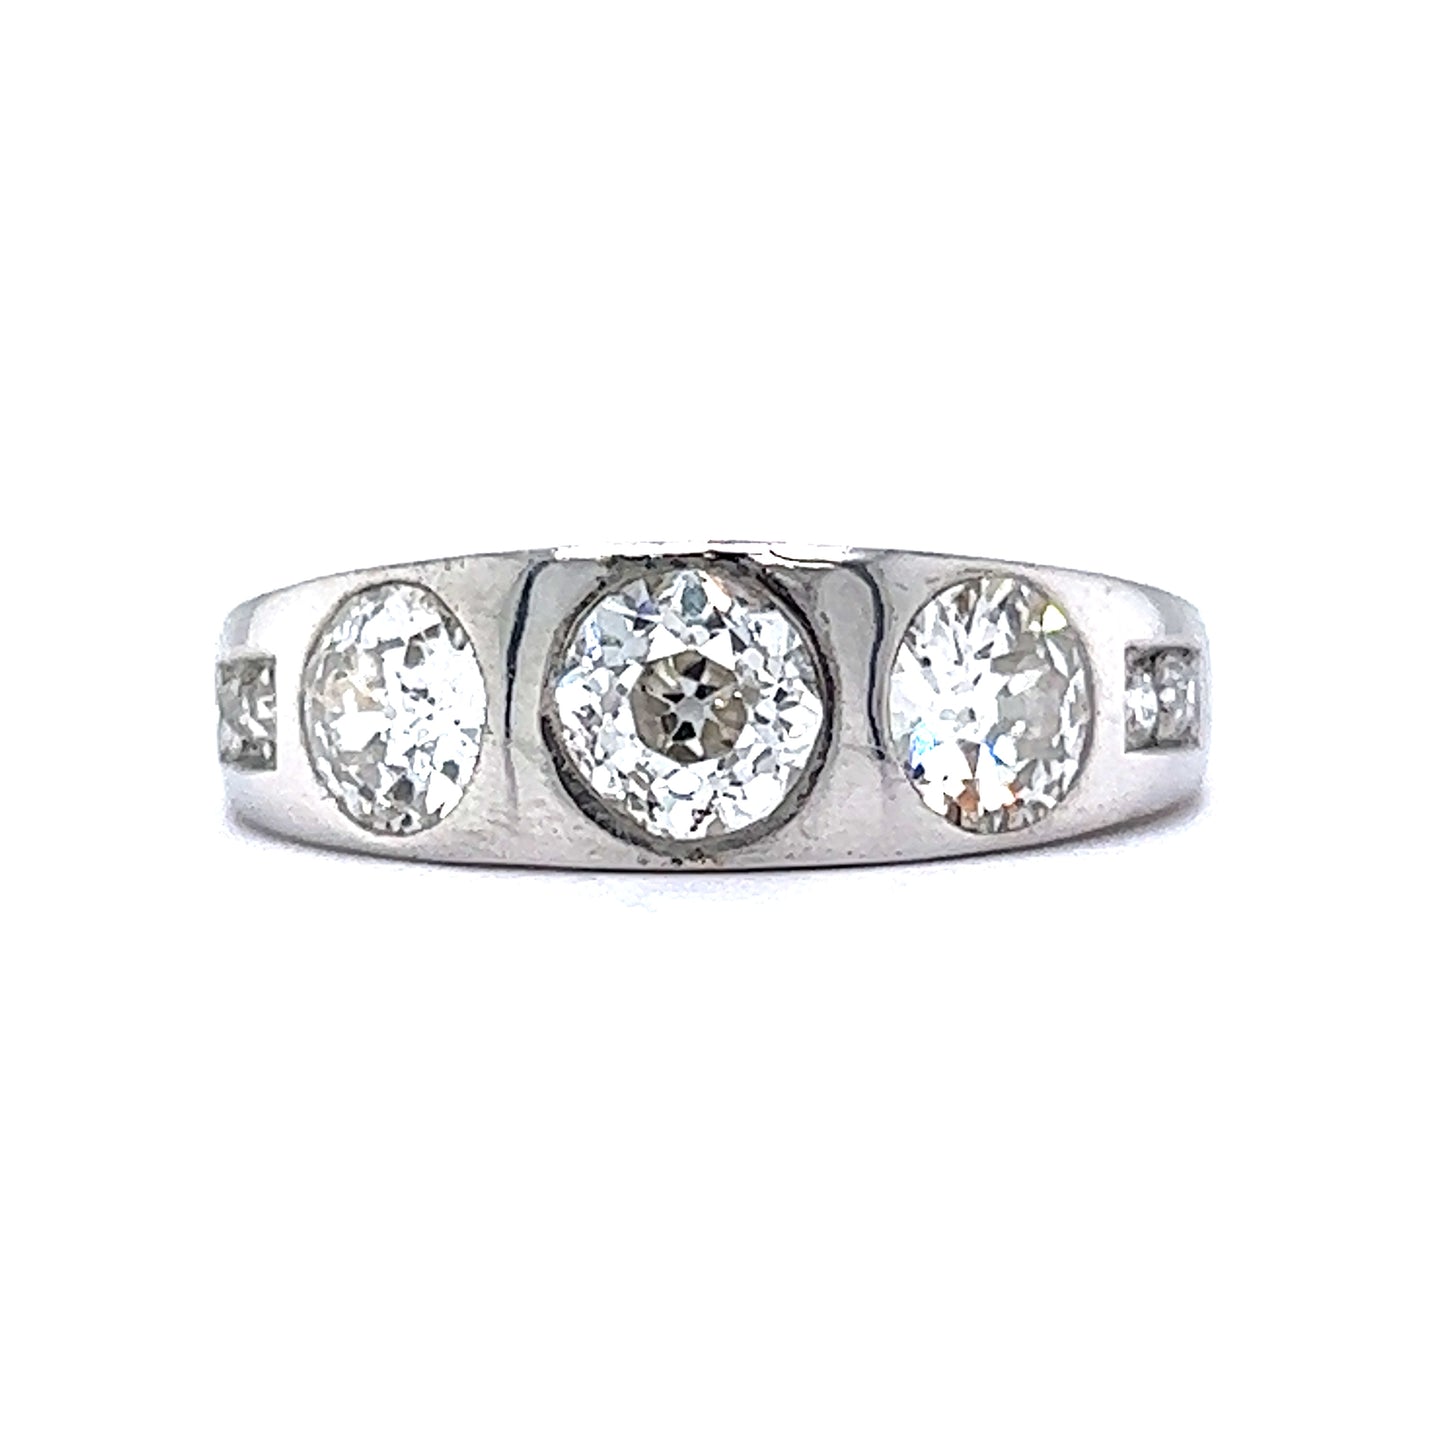 Antique Art Deco Diamond Ring in Platinum